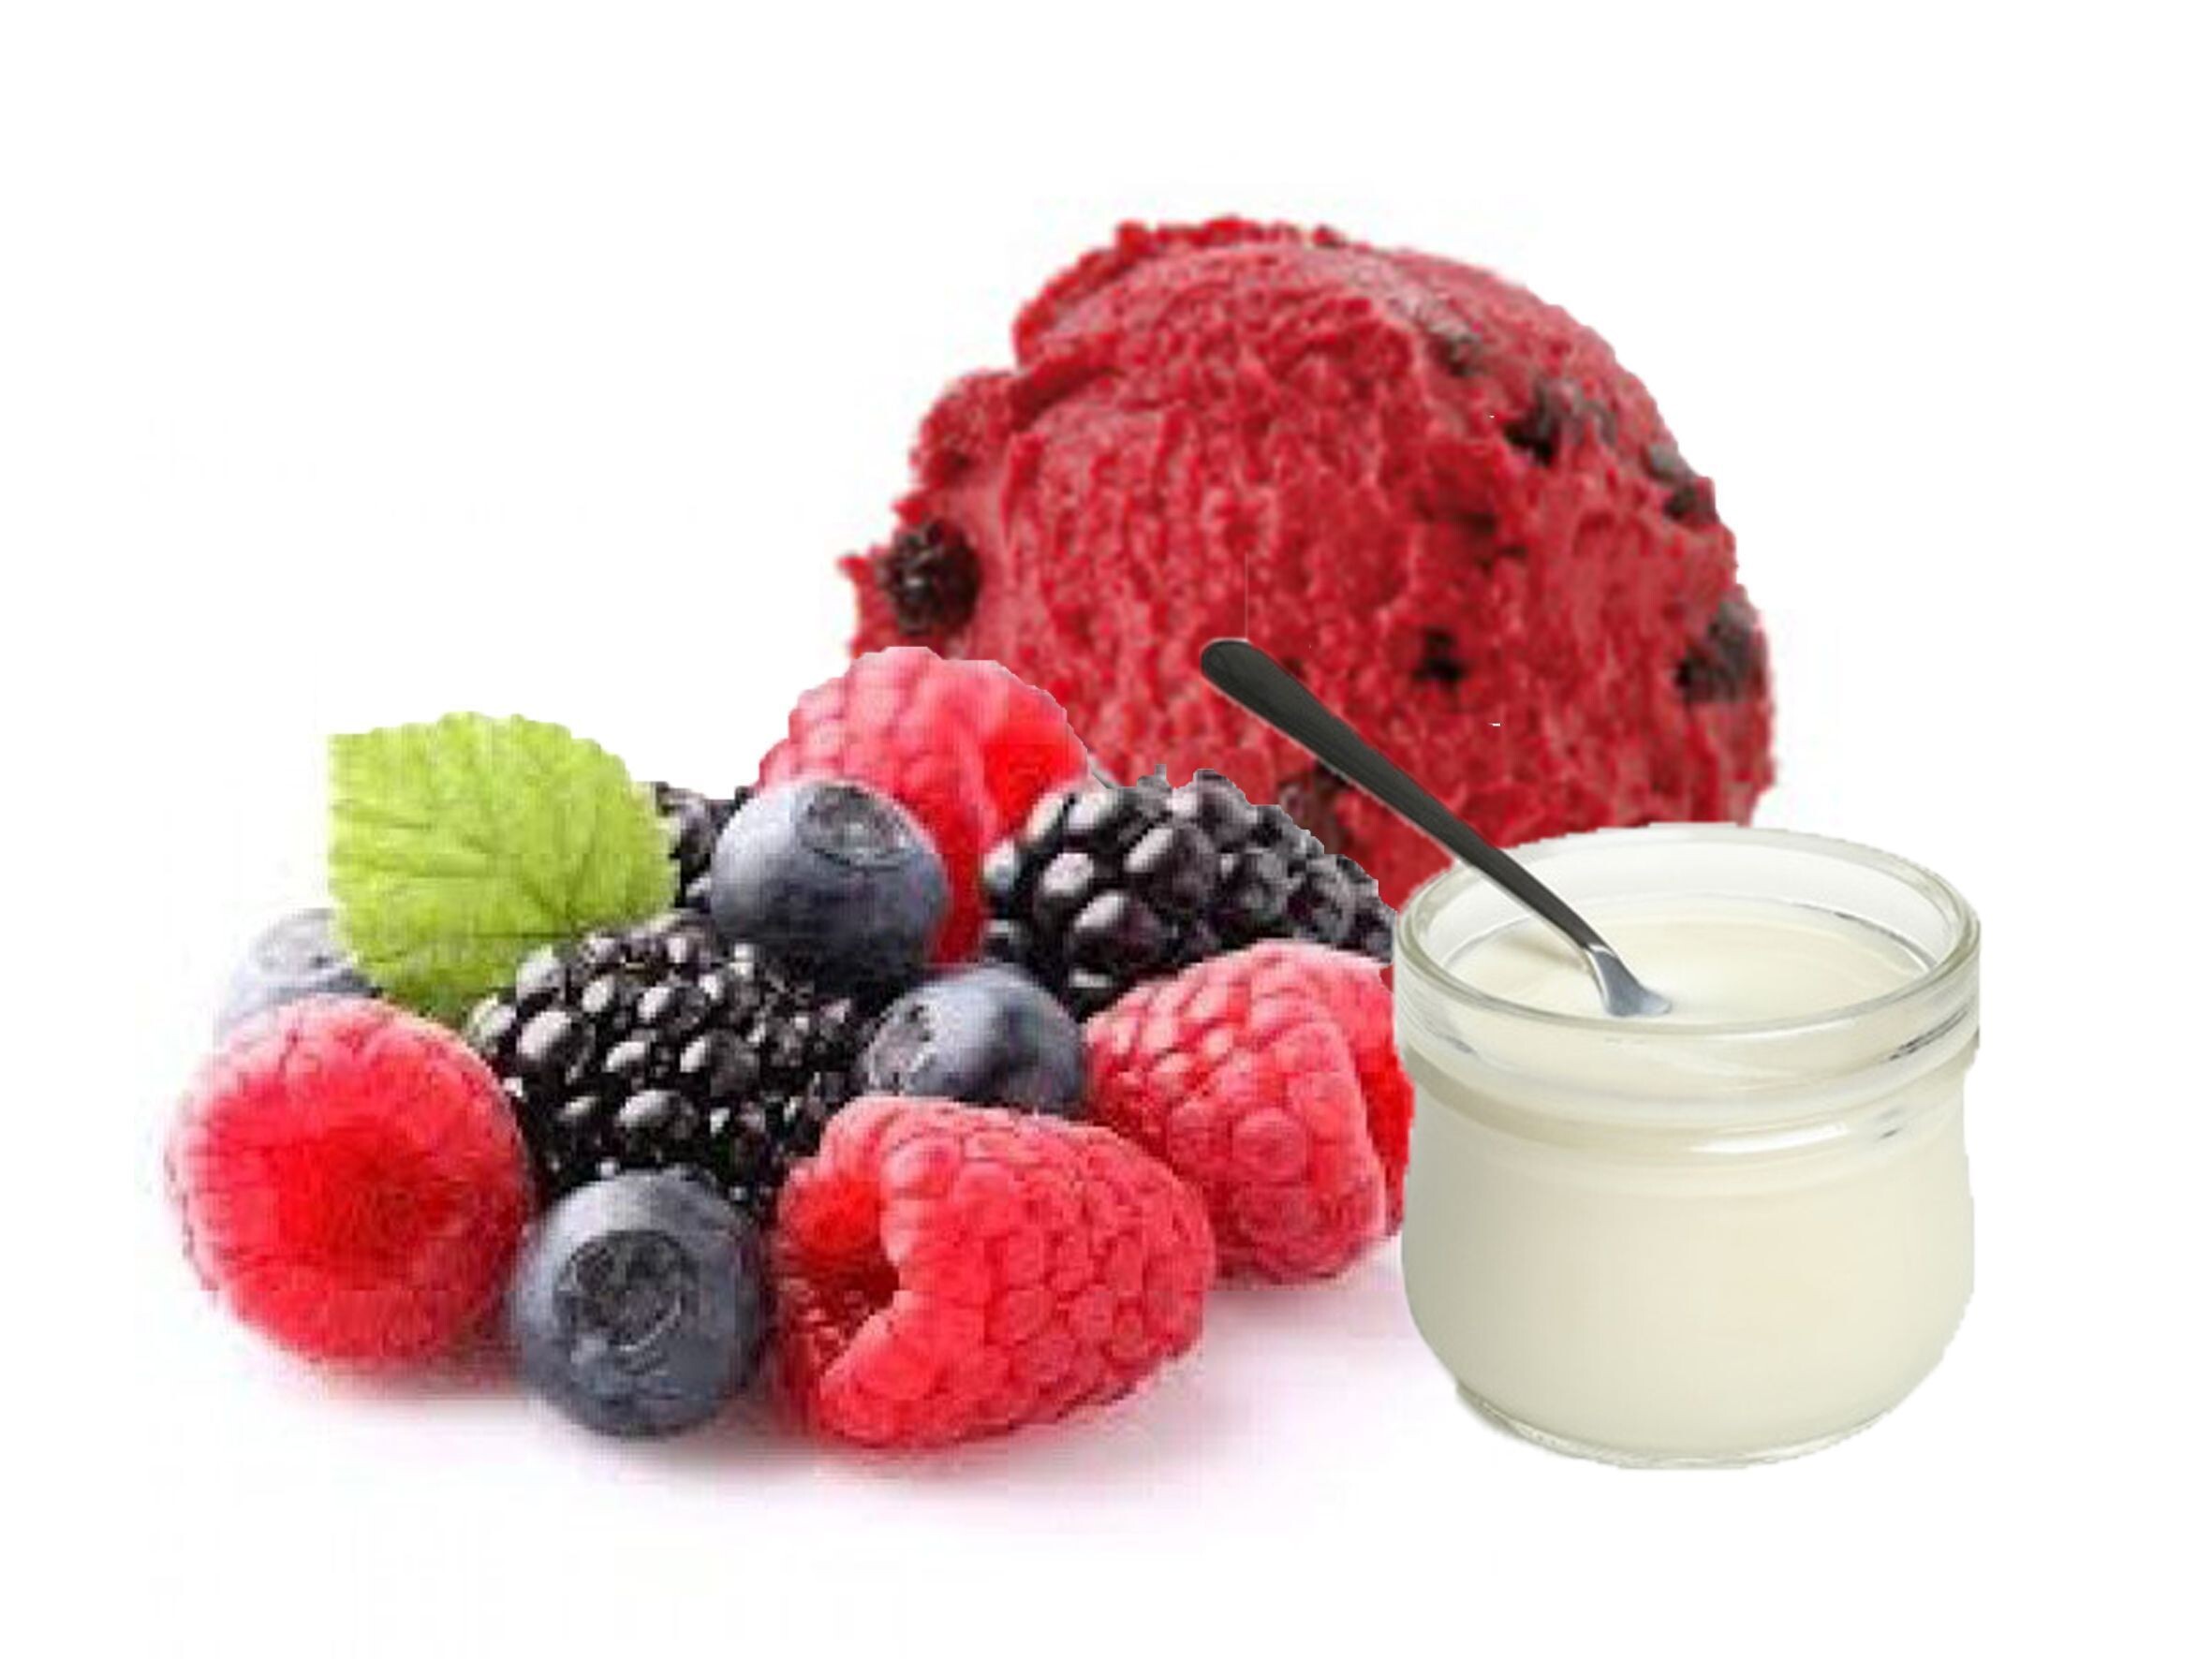 Verdonck Yoghurt met rode bosvruchten roomijs 2.5L (Default)